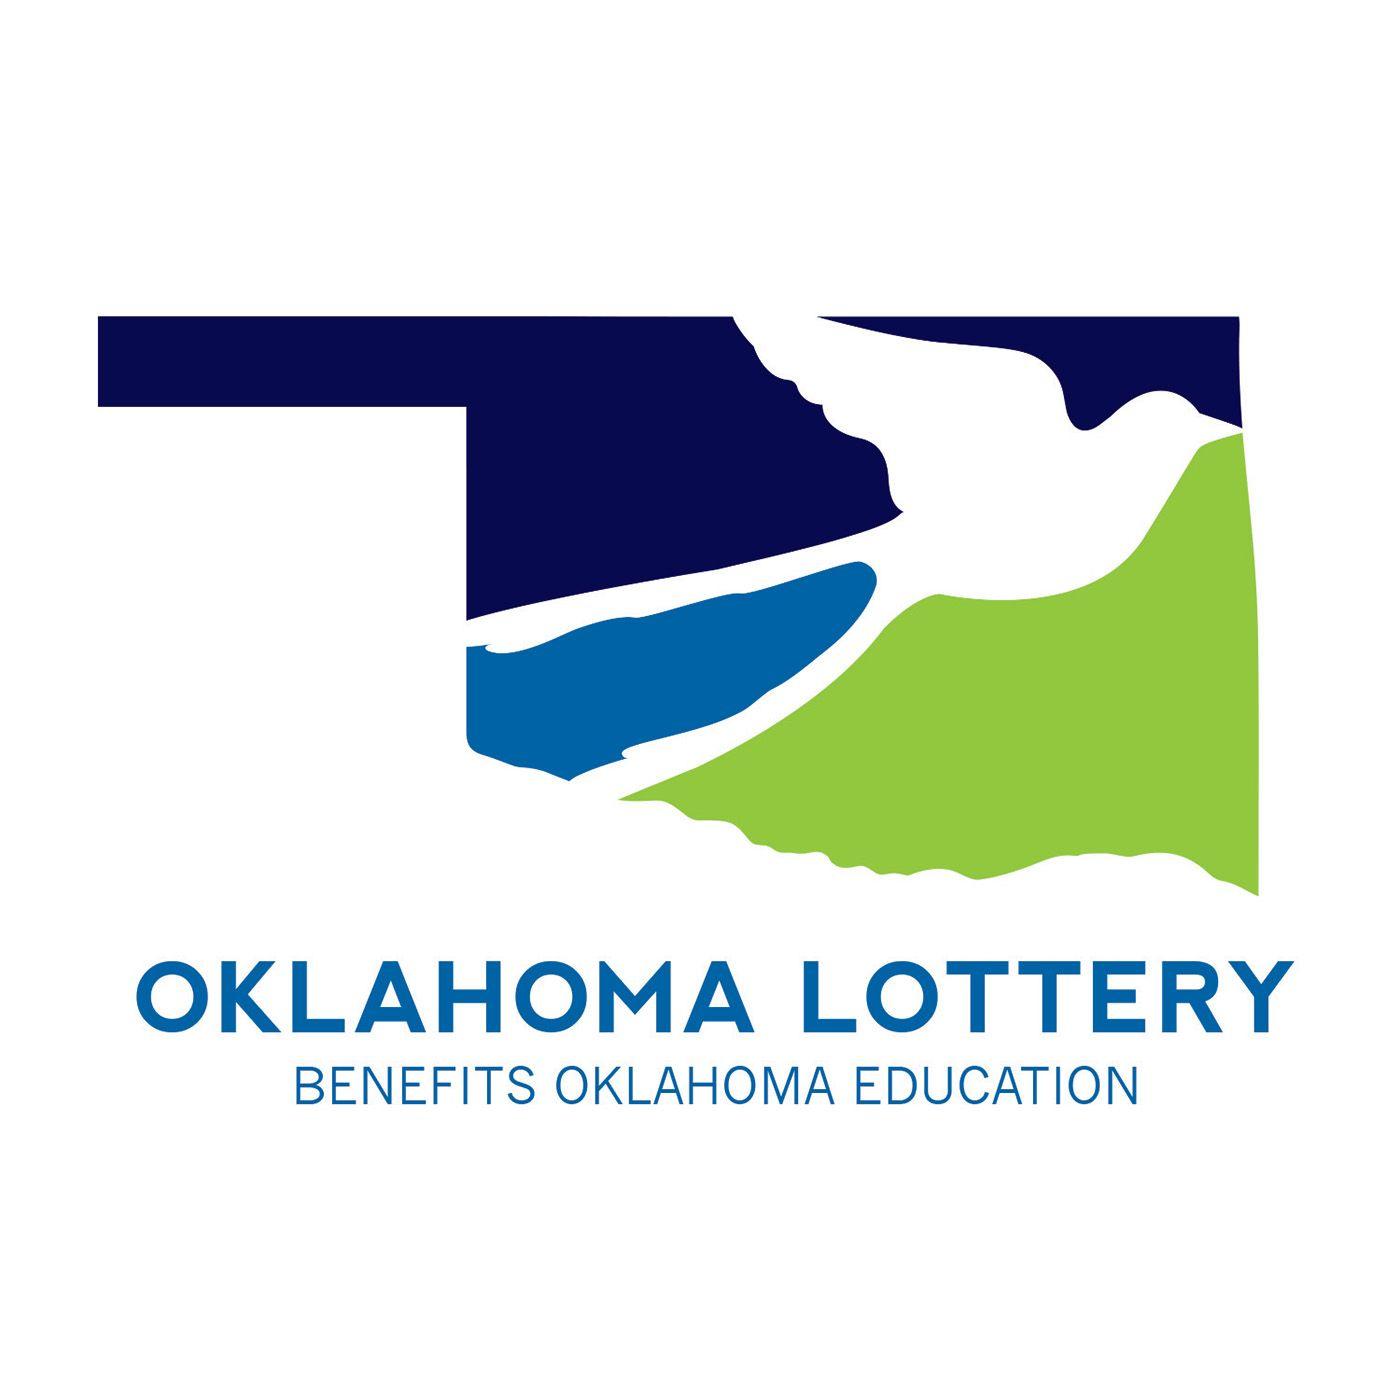 Oklahoma Logo - Oklahoma Lottery Logo Design on Behance